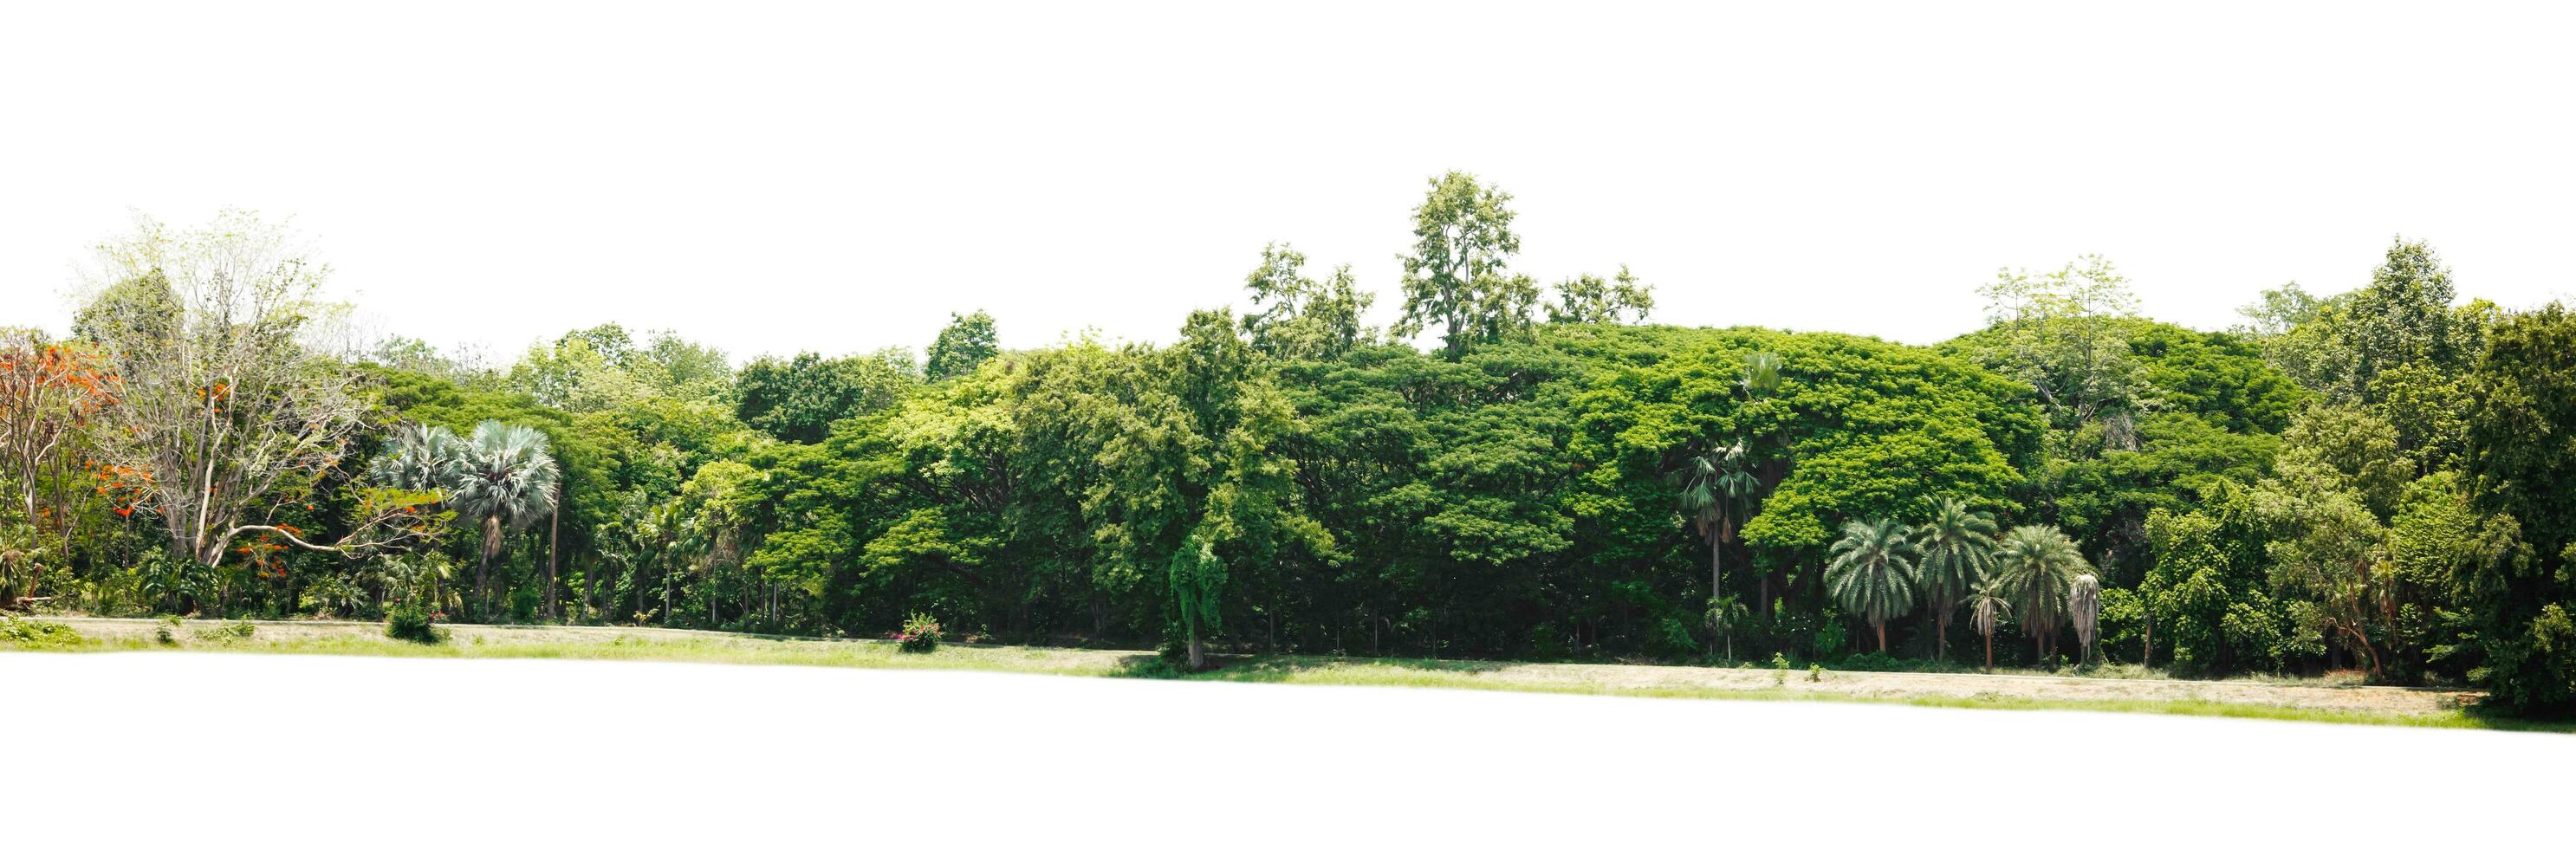 Reihe von Bäume und Sträucher isolieren auf Weiß Hintergrund foto